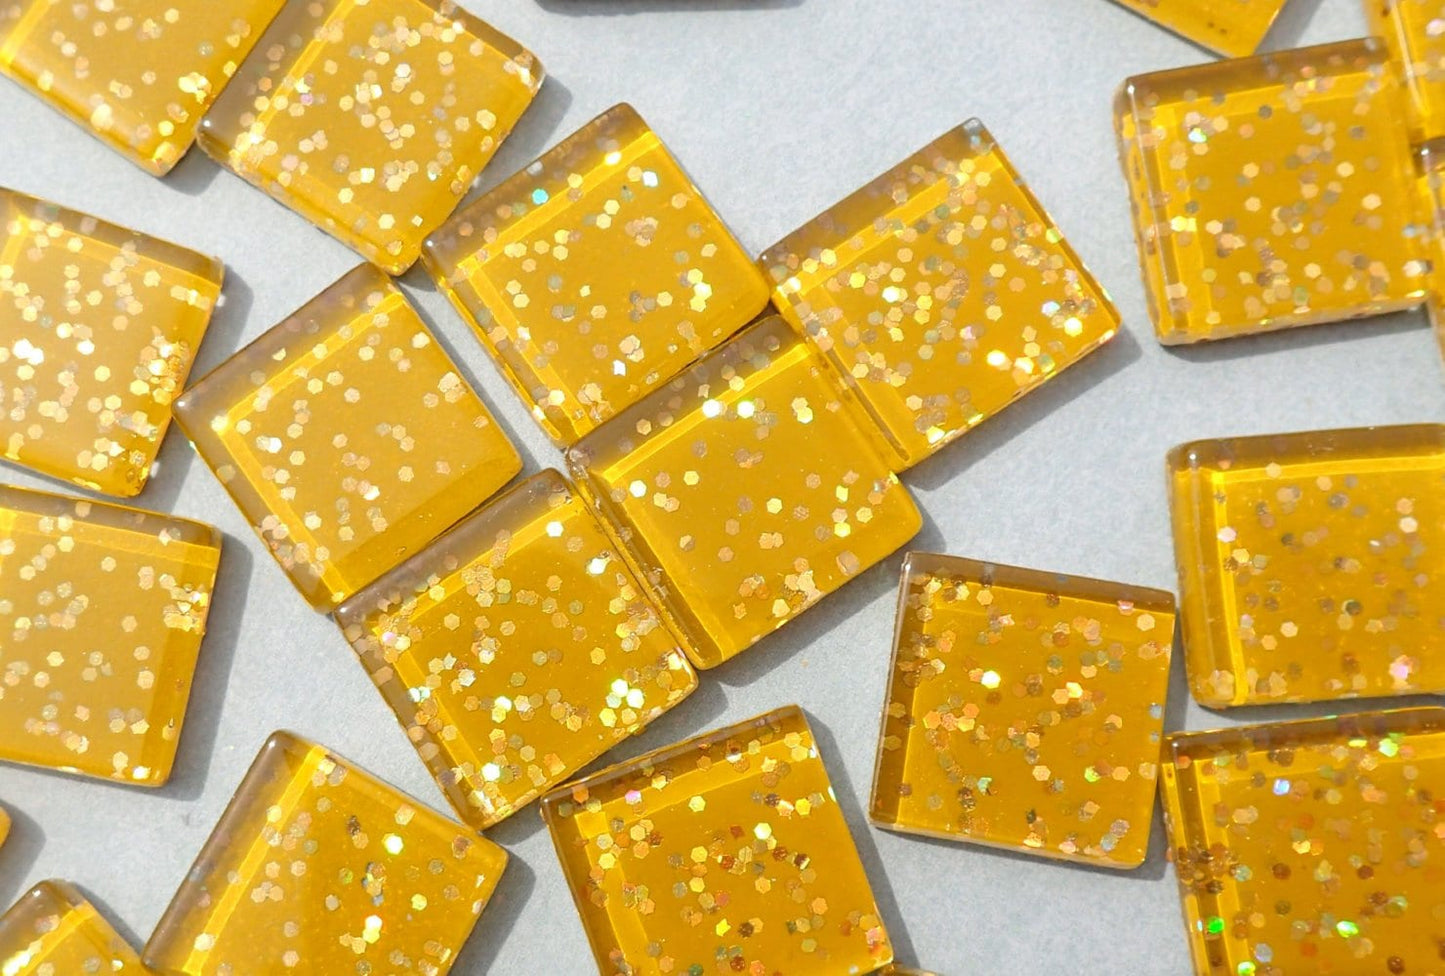 Harvest Gold Glitter Tiles - 20mm Mosaic Tiles - 25 Metallic Glass Tiles with Chunky Gold Glitter